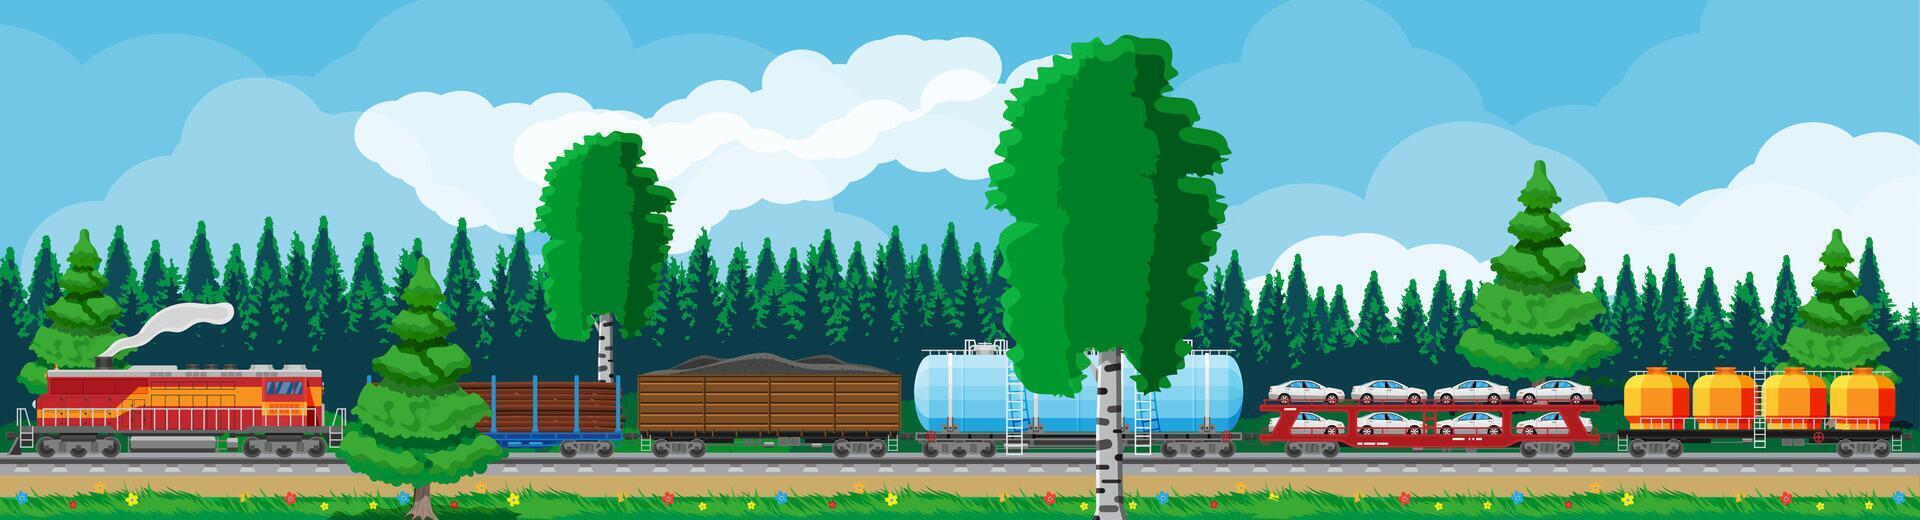 trein met lading wagens, reservoirs, tanks en auto's. spoorweg vracht verzameling. natuur landschap met bomen, heuvels, Woud en wolken. lading het spoor vervoer. vlak vector illustratie